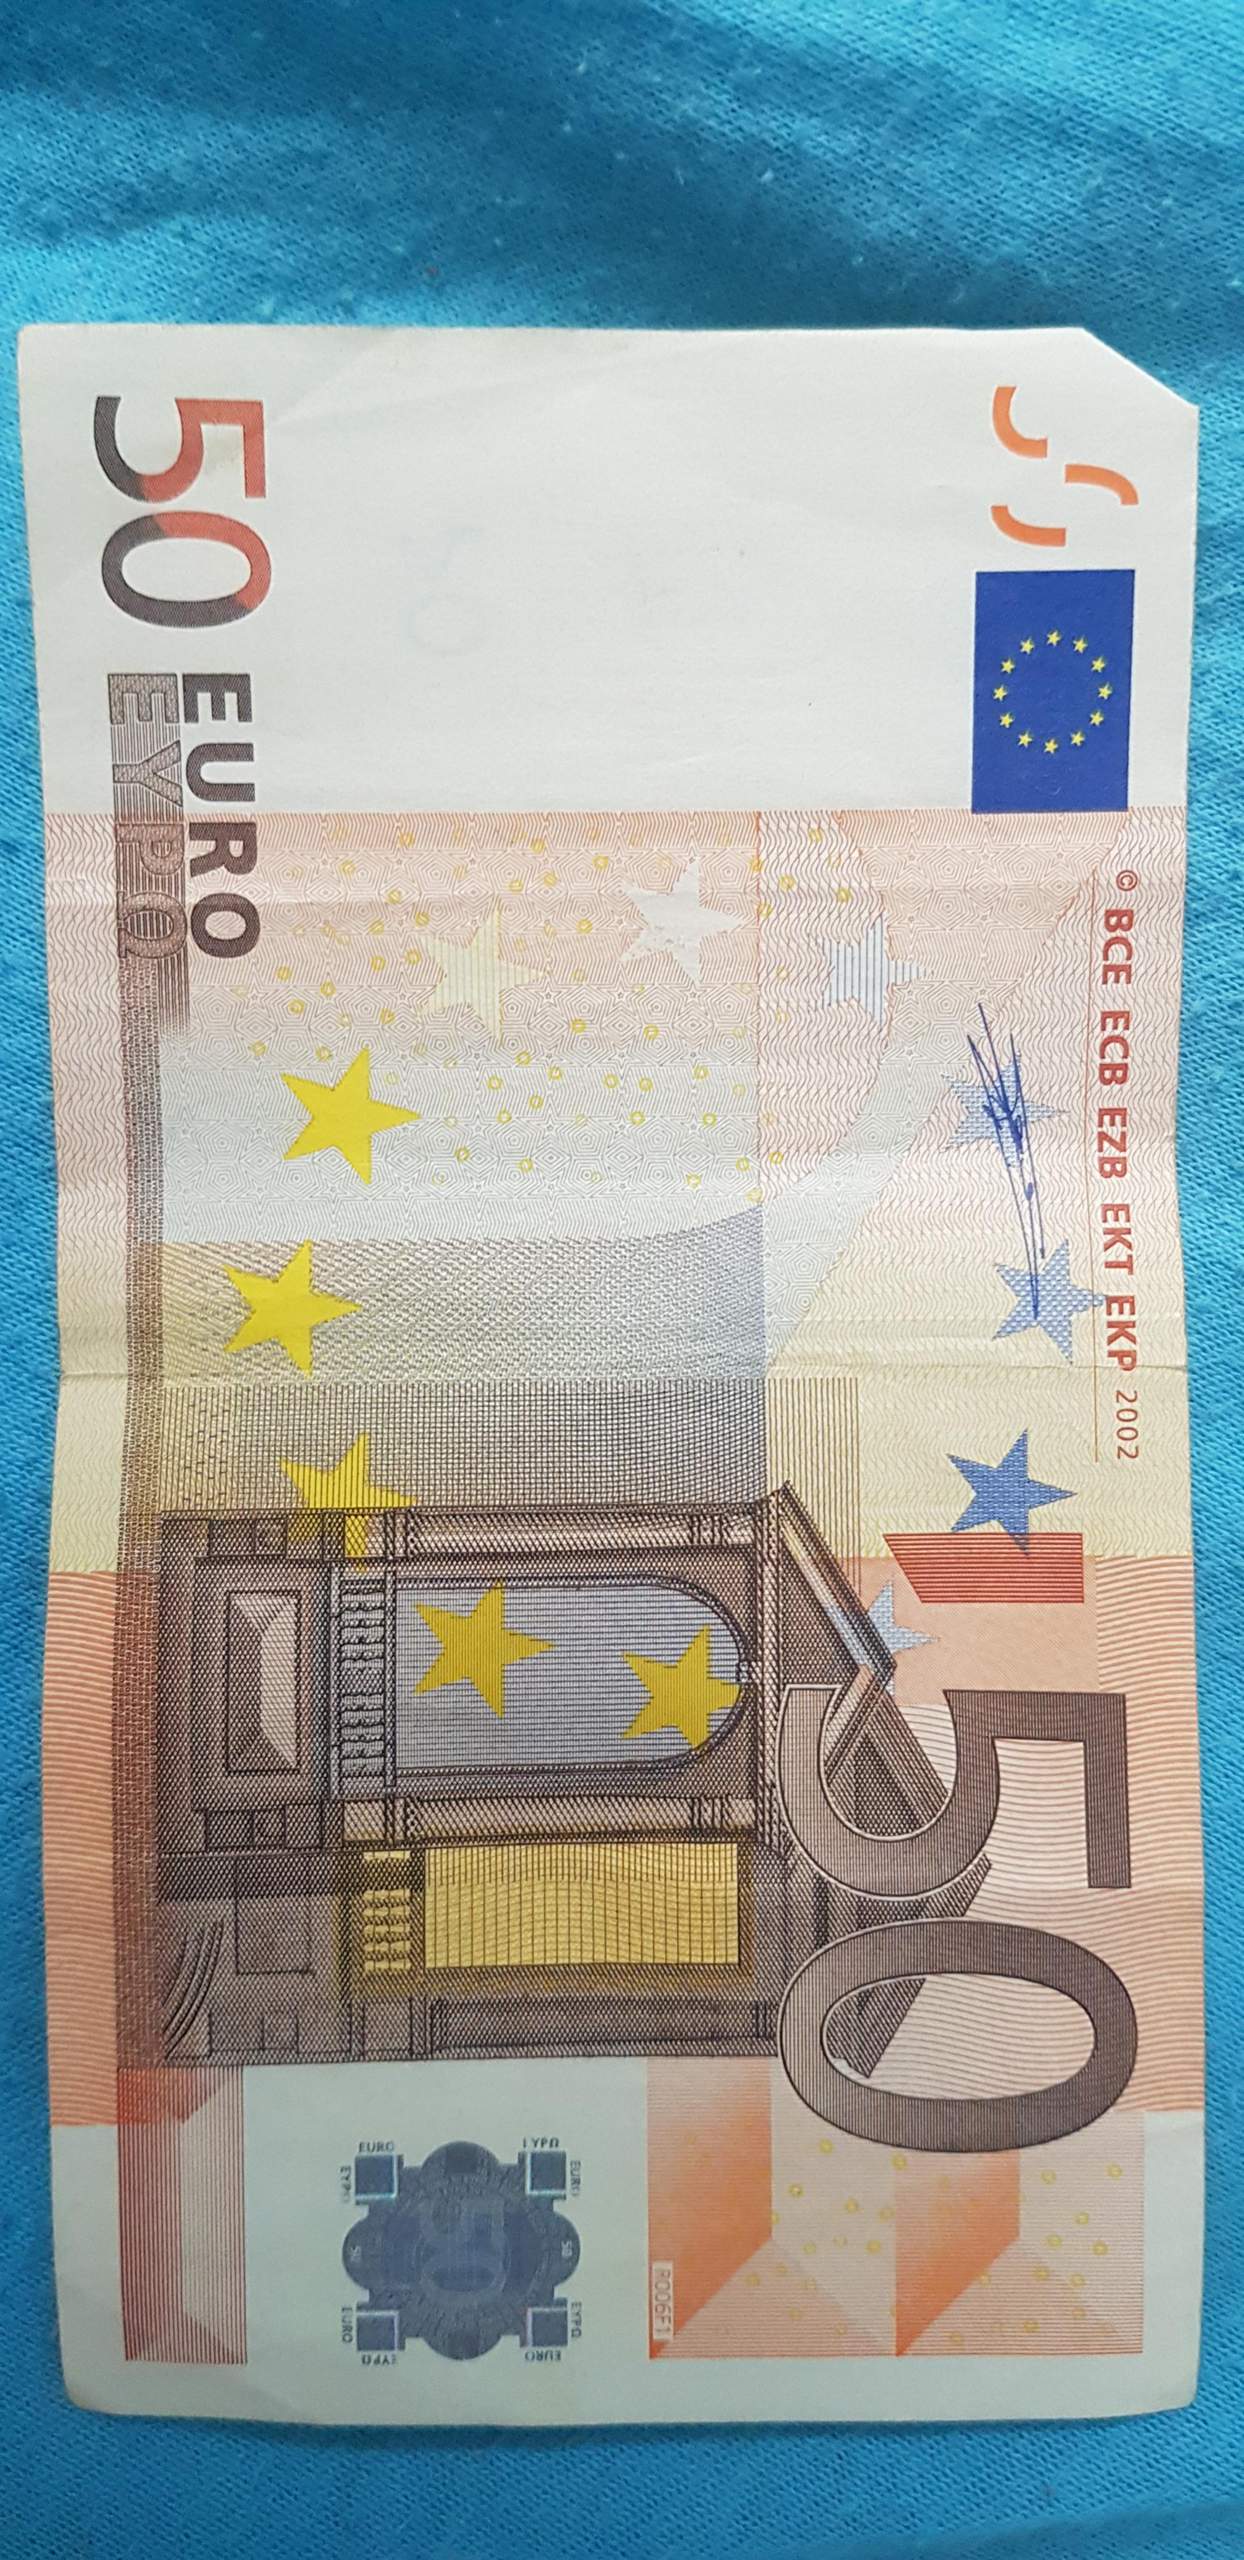 Ich habe einen alten 50€ Schein gefunden kann man mit dem immer noch bezahlen? (Geld Euro)